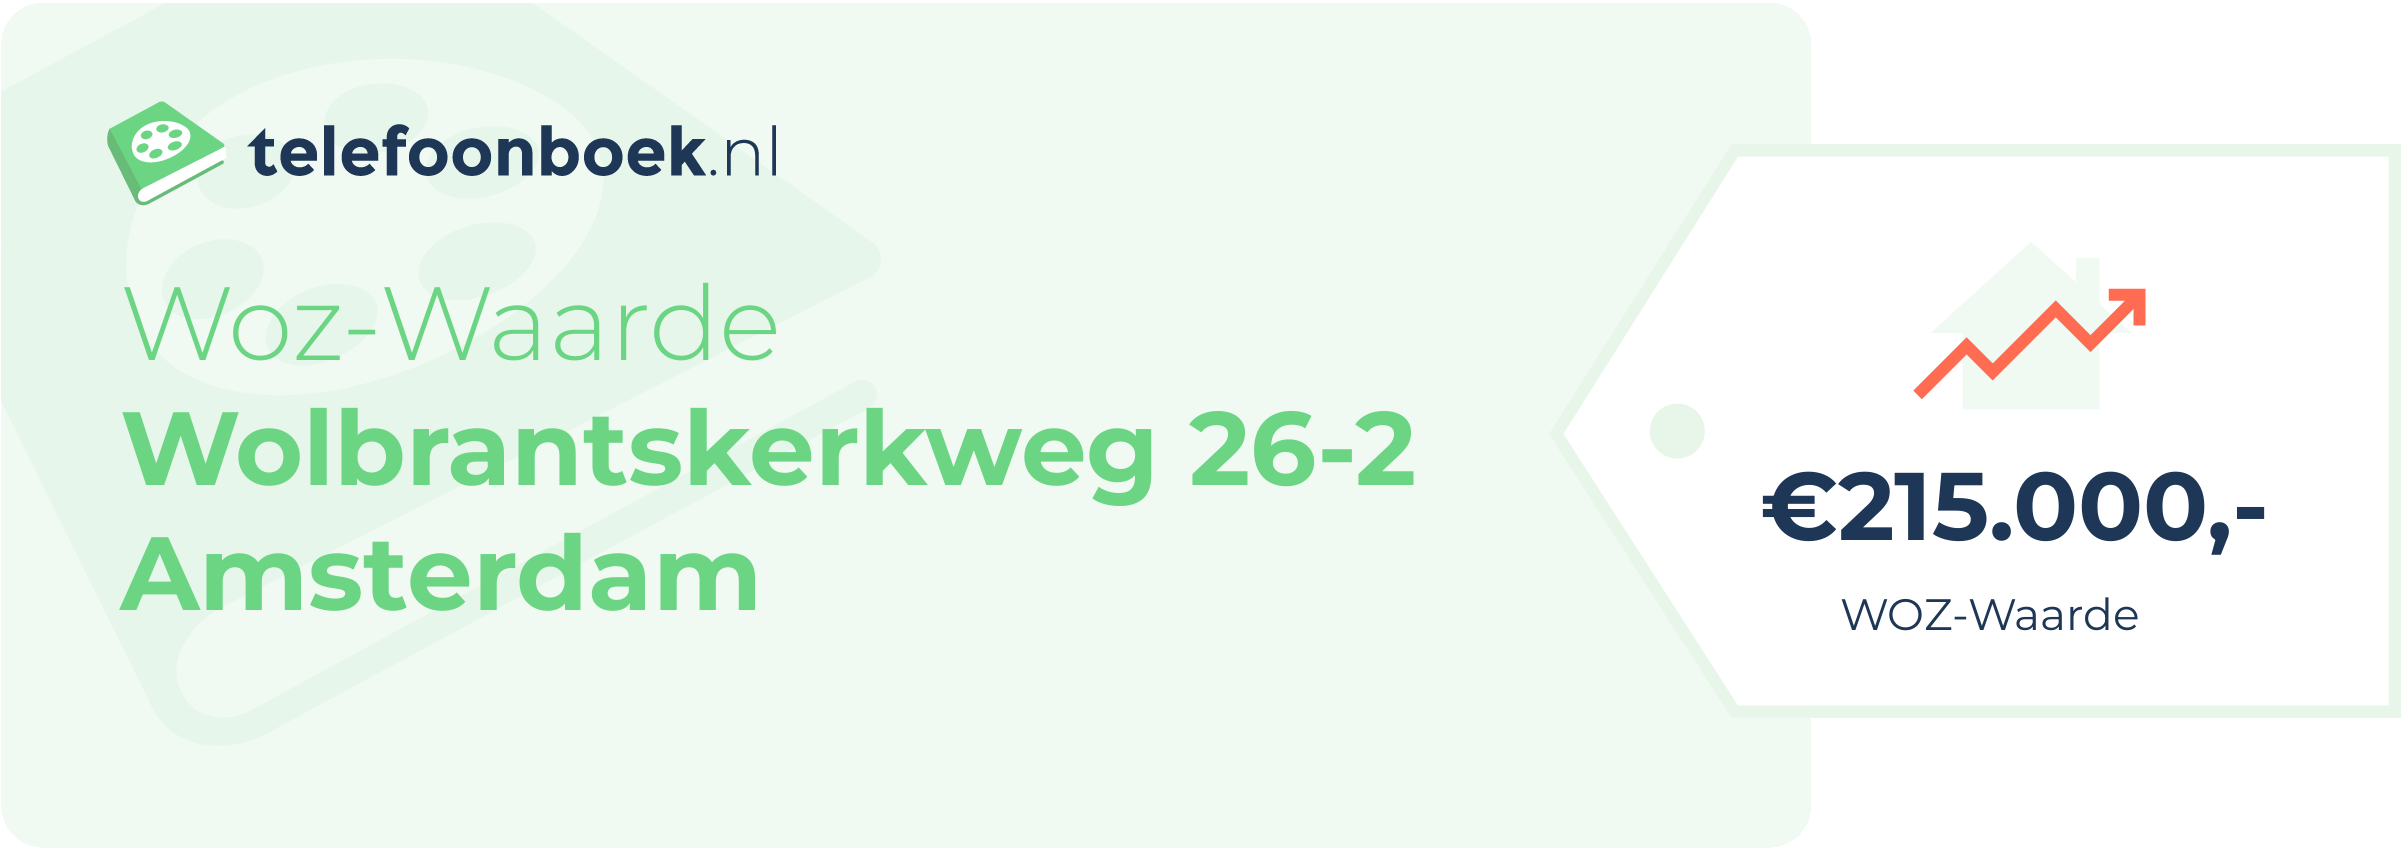 WOZ-waarde Wolbrantskerkweg 26-2 Amsterdam